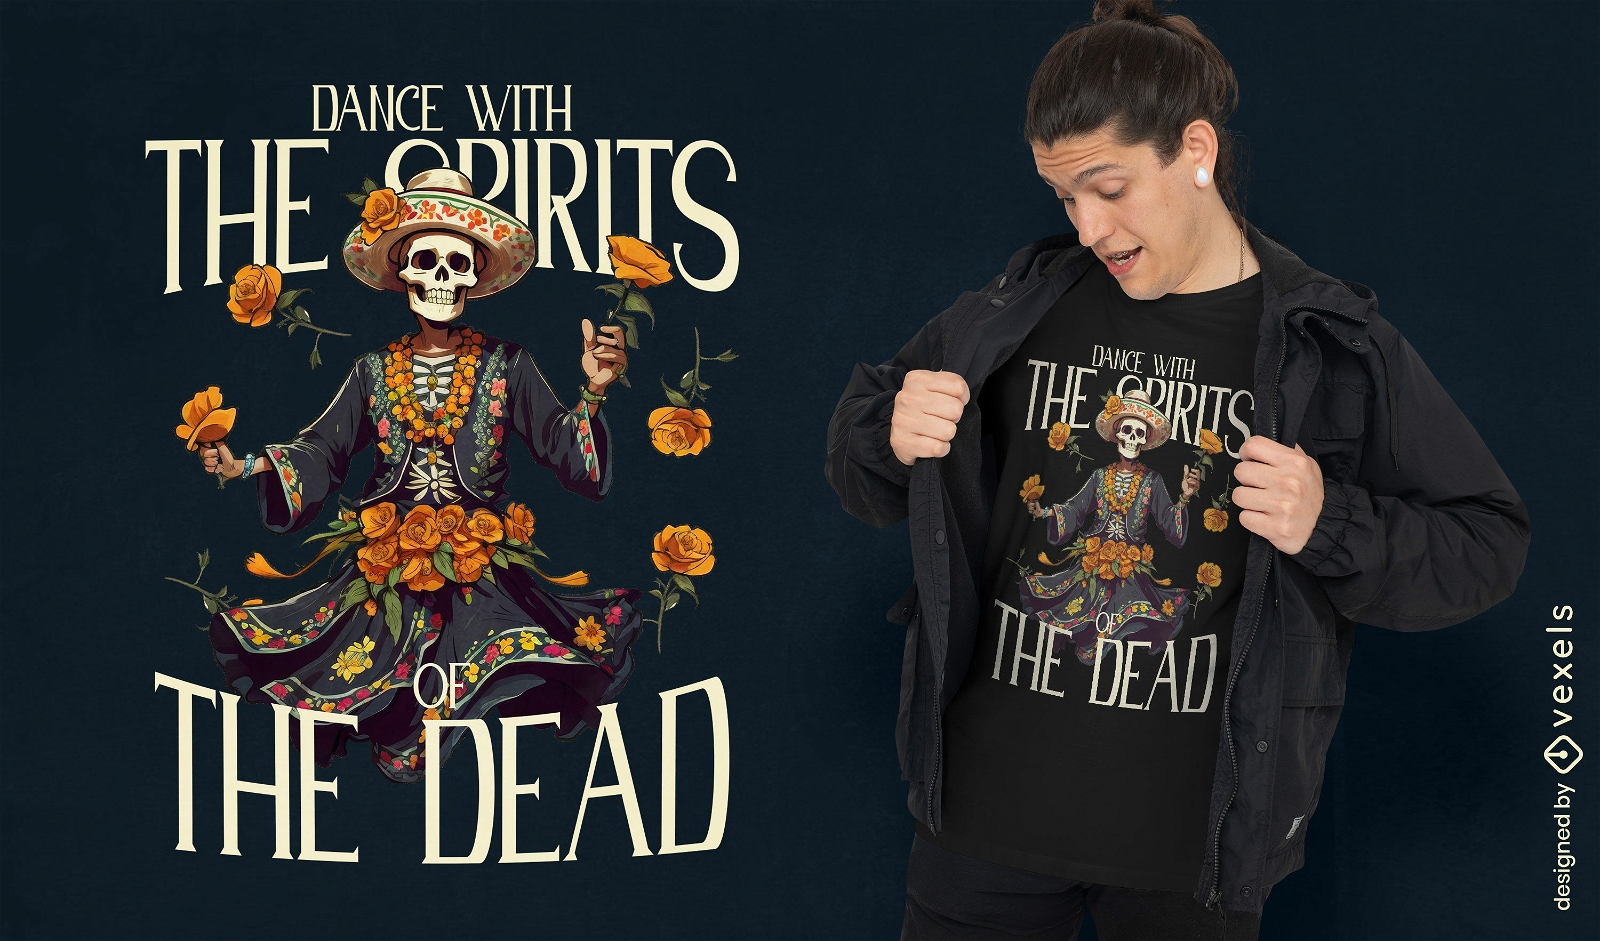 Diseño de camiseta de la danza enérgica de los muertos.